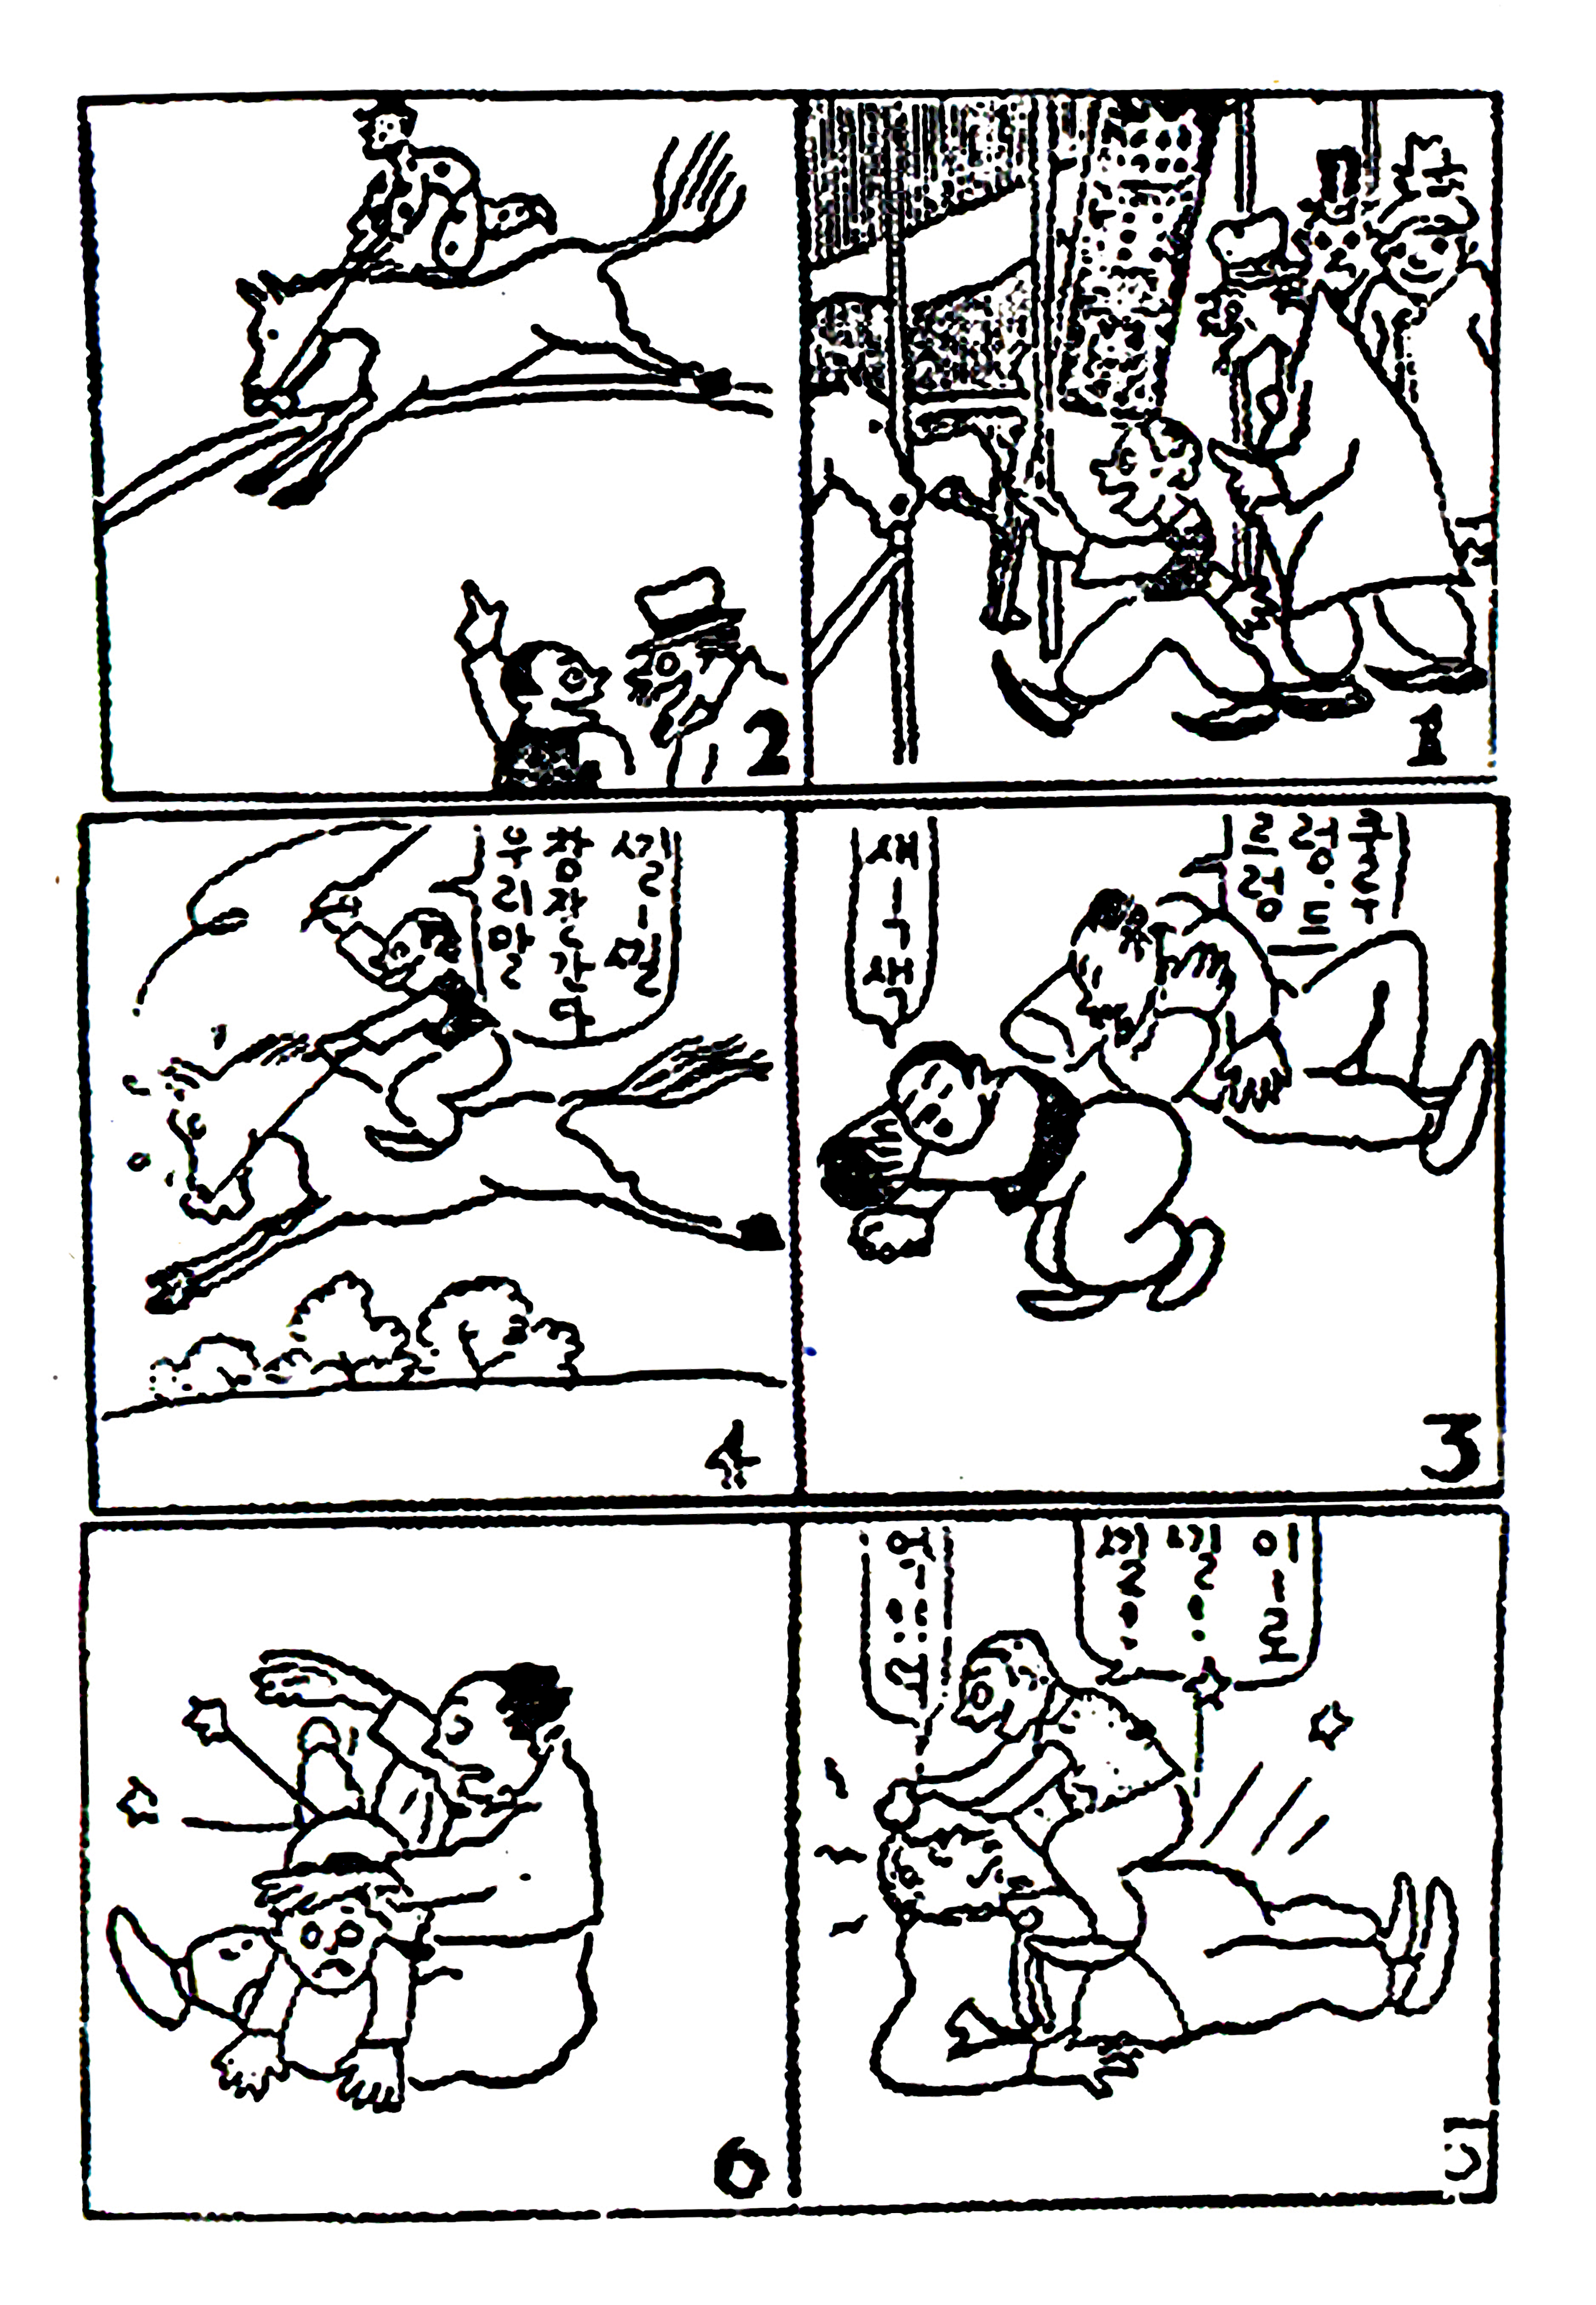 Manhwa & webtoon : l'envol de la BD coréenne - © AHN Seok-joo, Sidong Rides a Horse, Children, 1925 